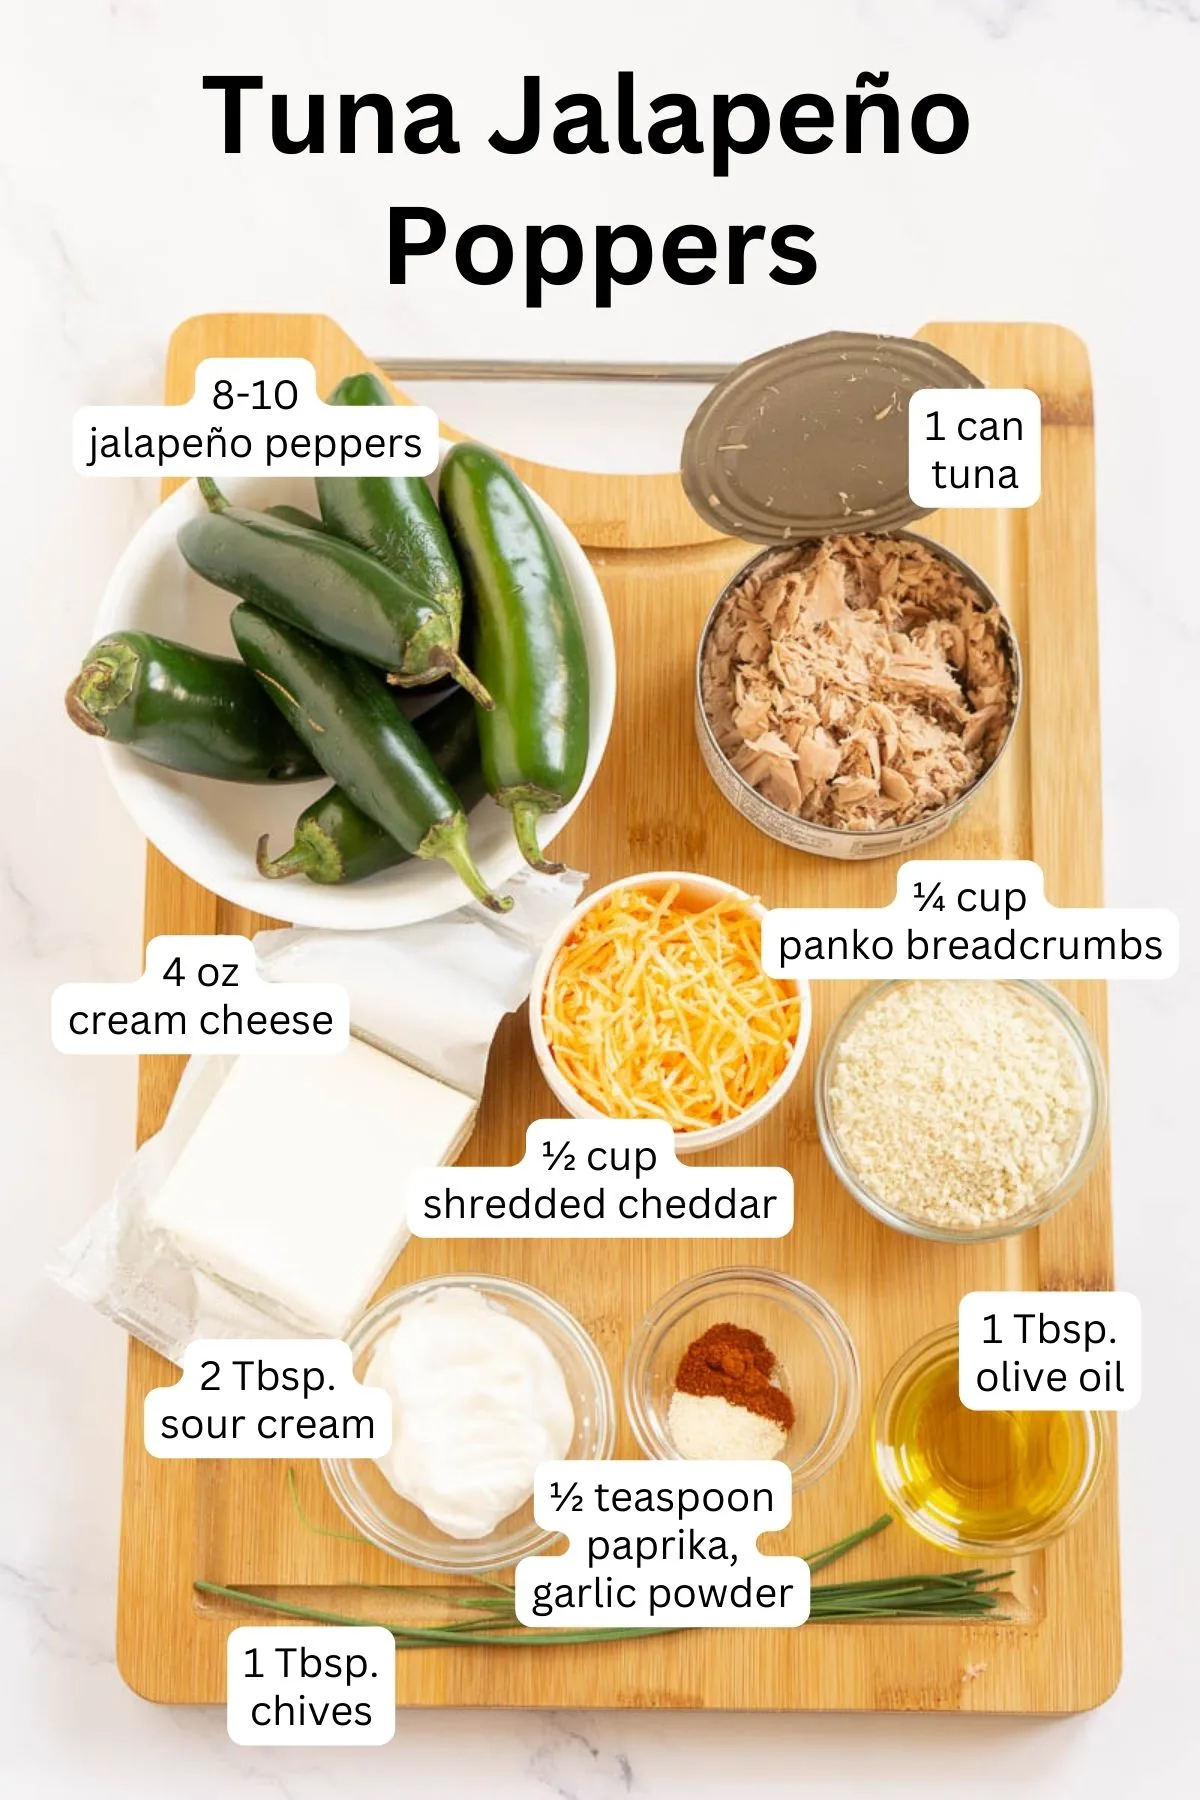 Ingredients to make tuna stuffed jalapeño poppers